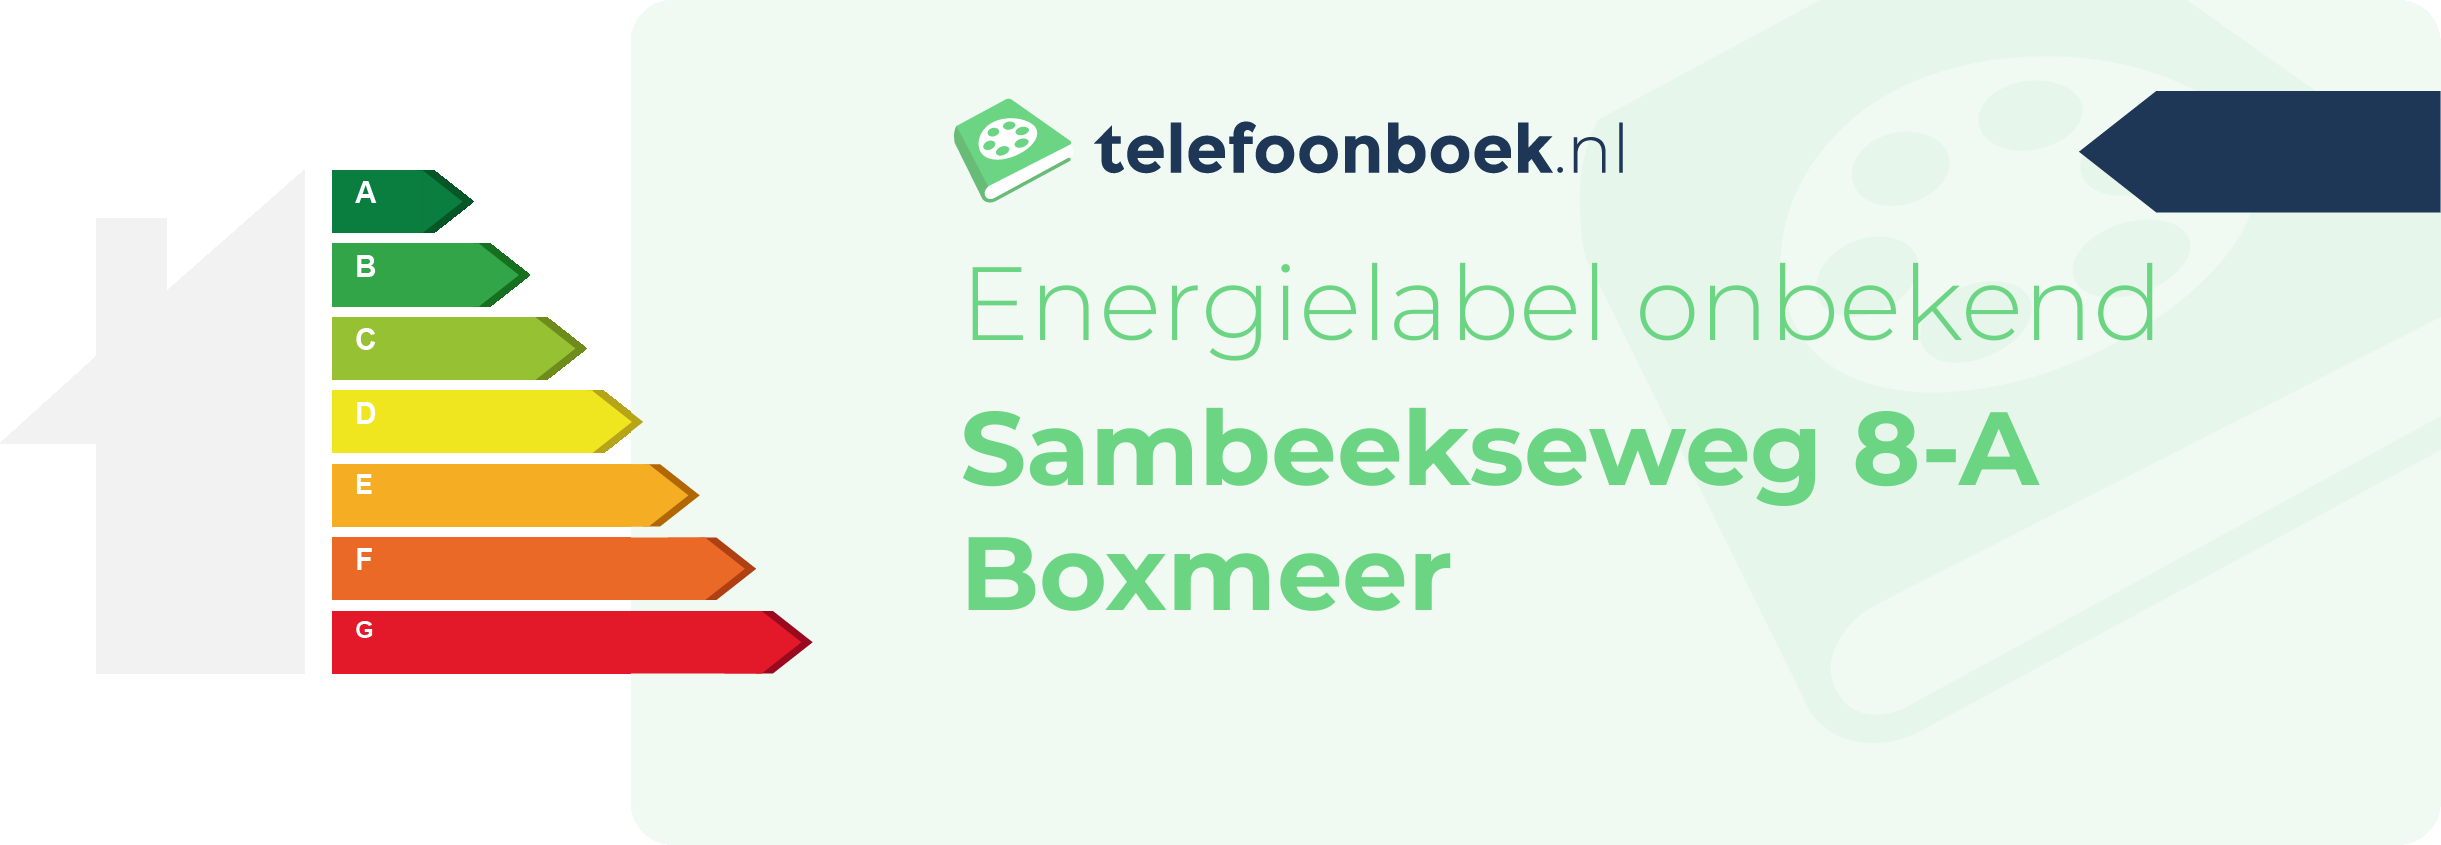 Energielabel Sambeekseweg 8-A Boxmeer